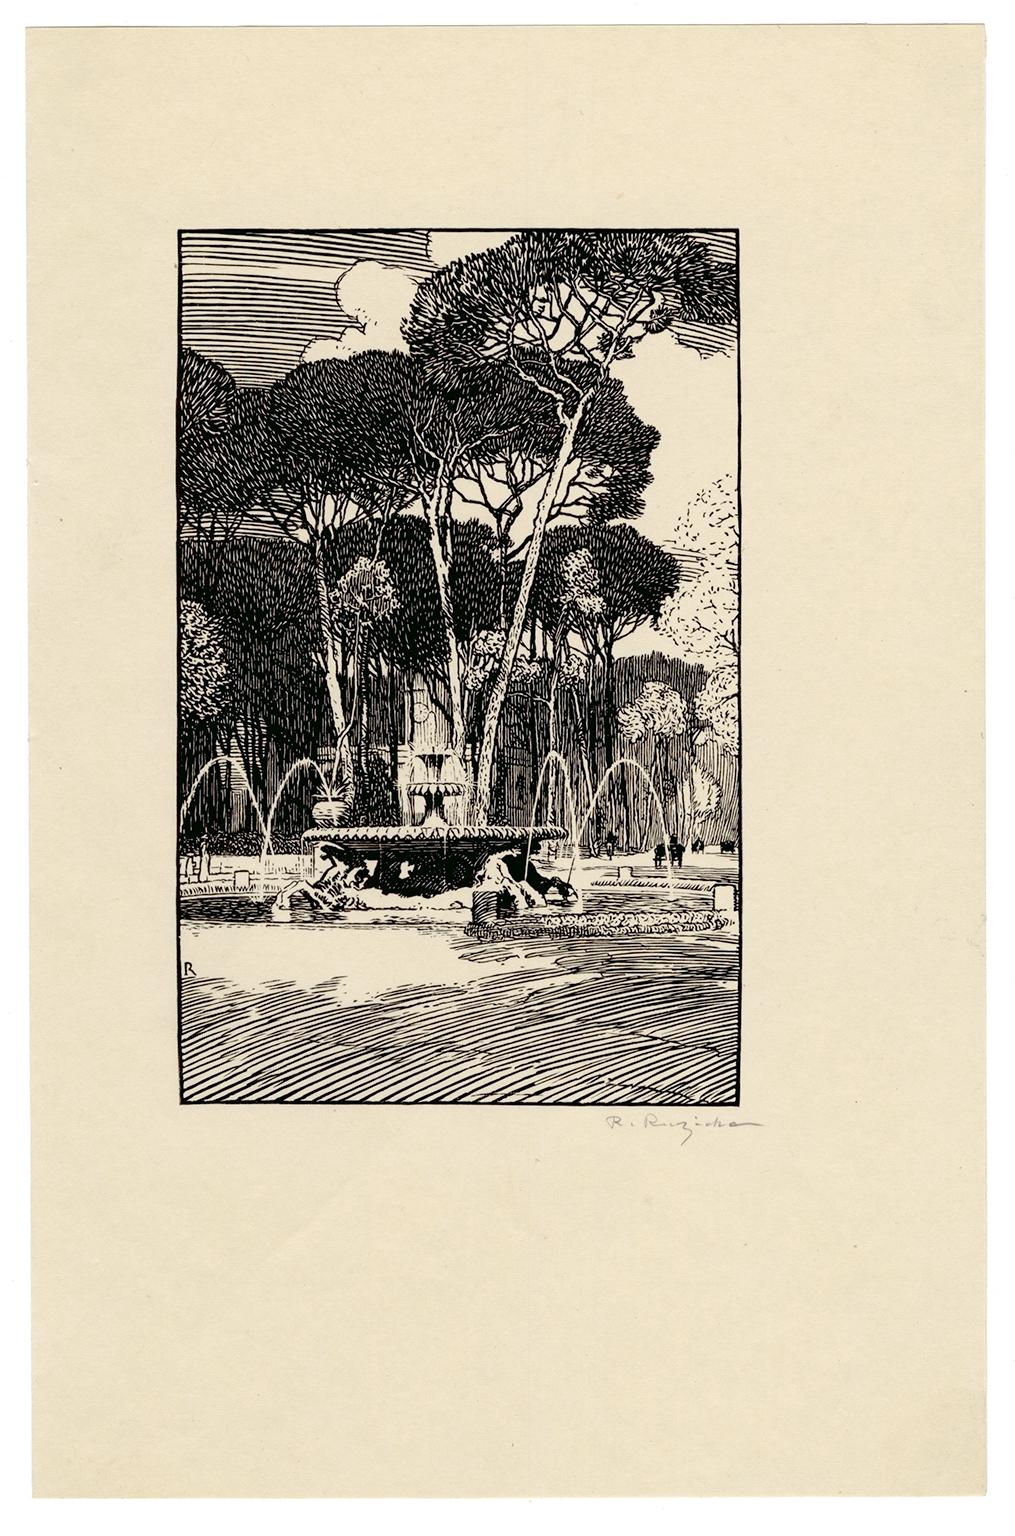 Brunnen mit Meerespferden, Rom, frühes 20. Jahrhundert – Print von Rudolph Ruzicka